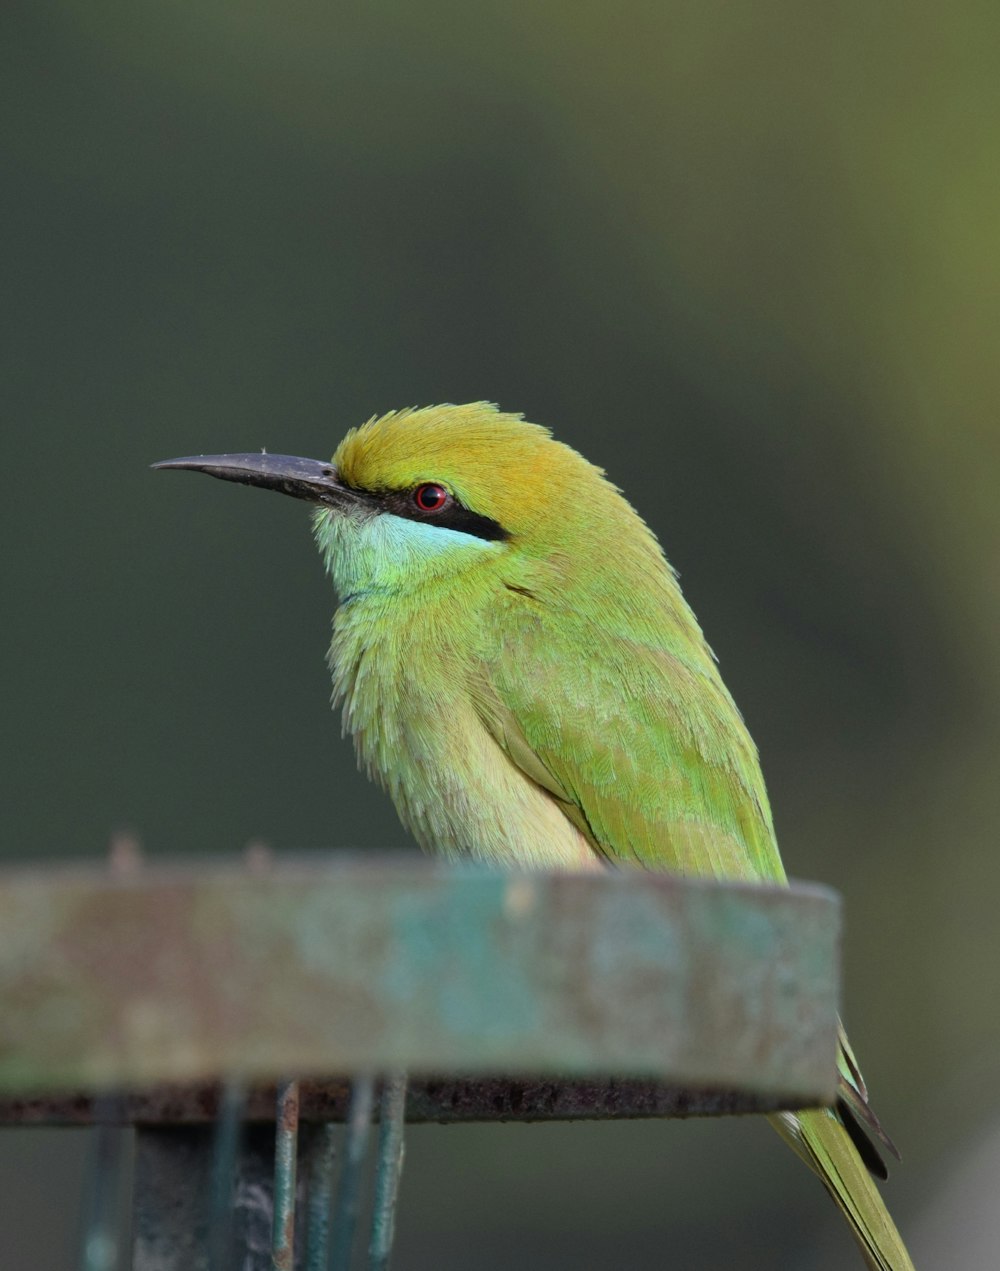 a green bird sitting on top of a bird feeder